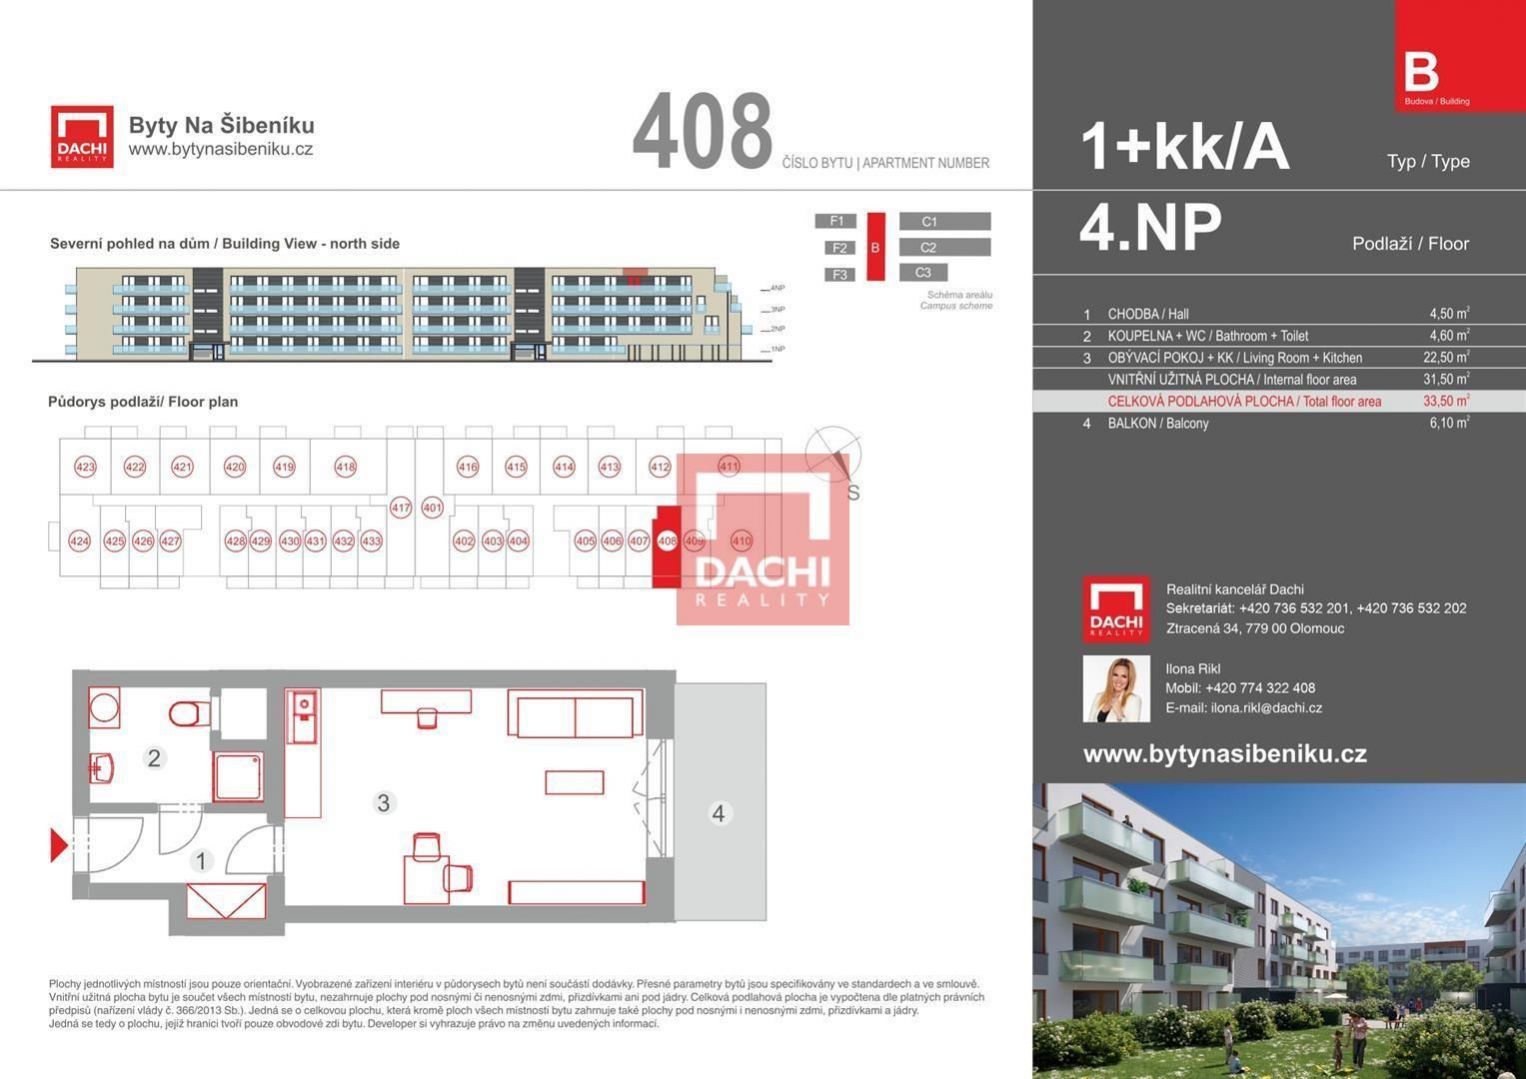 Prodej novostavby bytu B.408  1+kk  33,50m s balkonem 6,10m, Olomouc, Byty Na Šibeníku II.etapa, obrázek č. 3